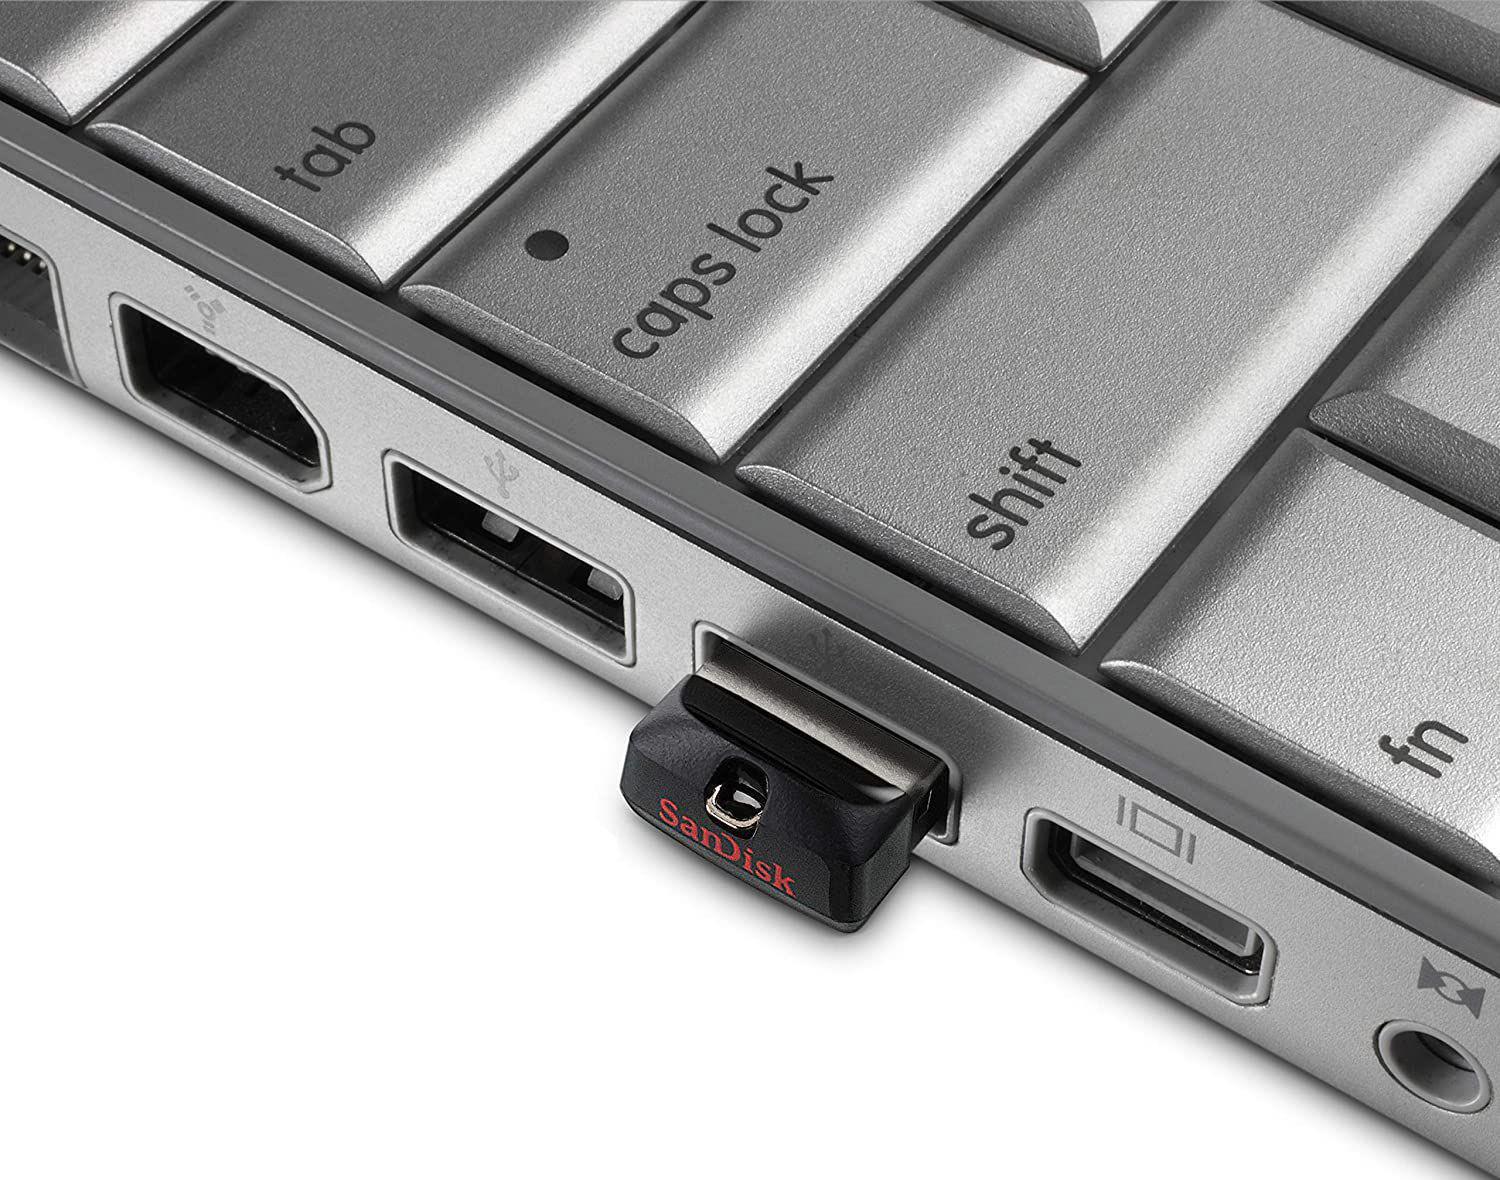 Miniatúrny USB flashdisk SanDisk Cruzer Fit s kapacitou 16 GB neblokuje prípadné vedľajšie porty pri cieľovom zariadení, kedy ponúka jednoduchý a bezpečný spôsob zdieľania, presunu a zálohovania vašich najdôležitejších súborov.